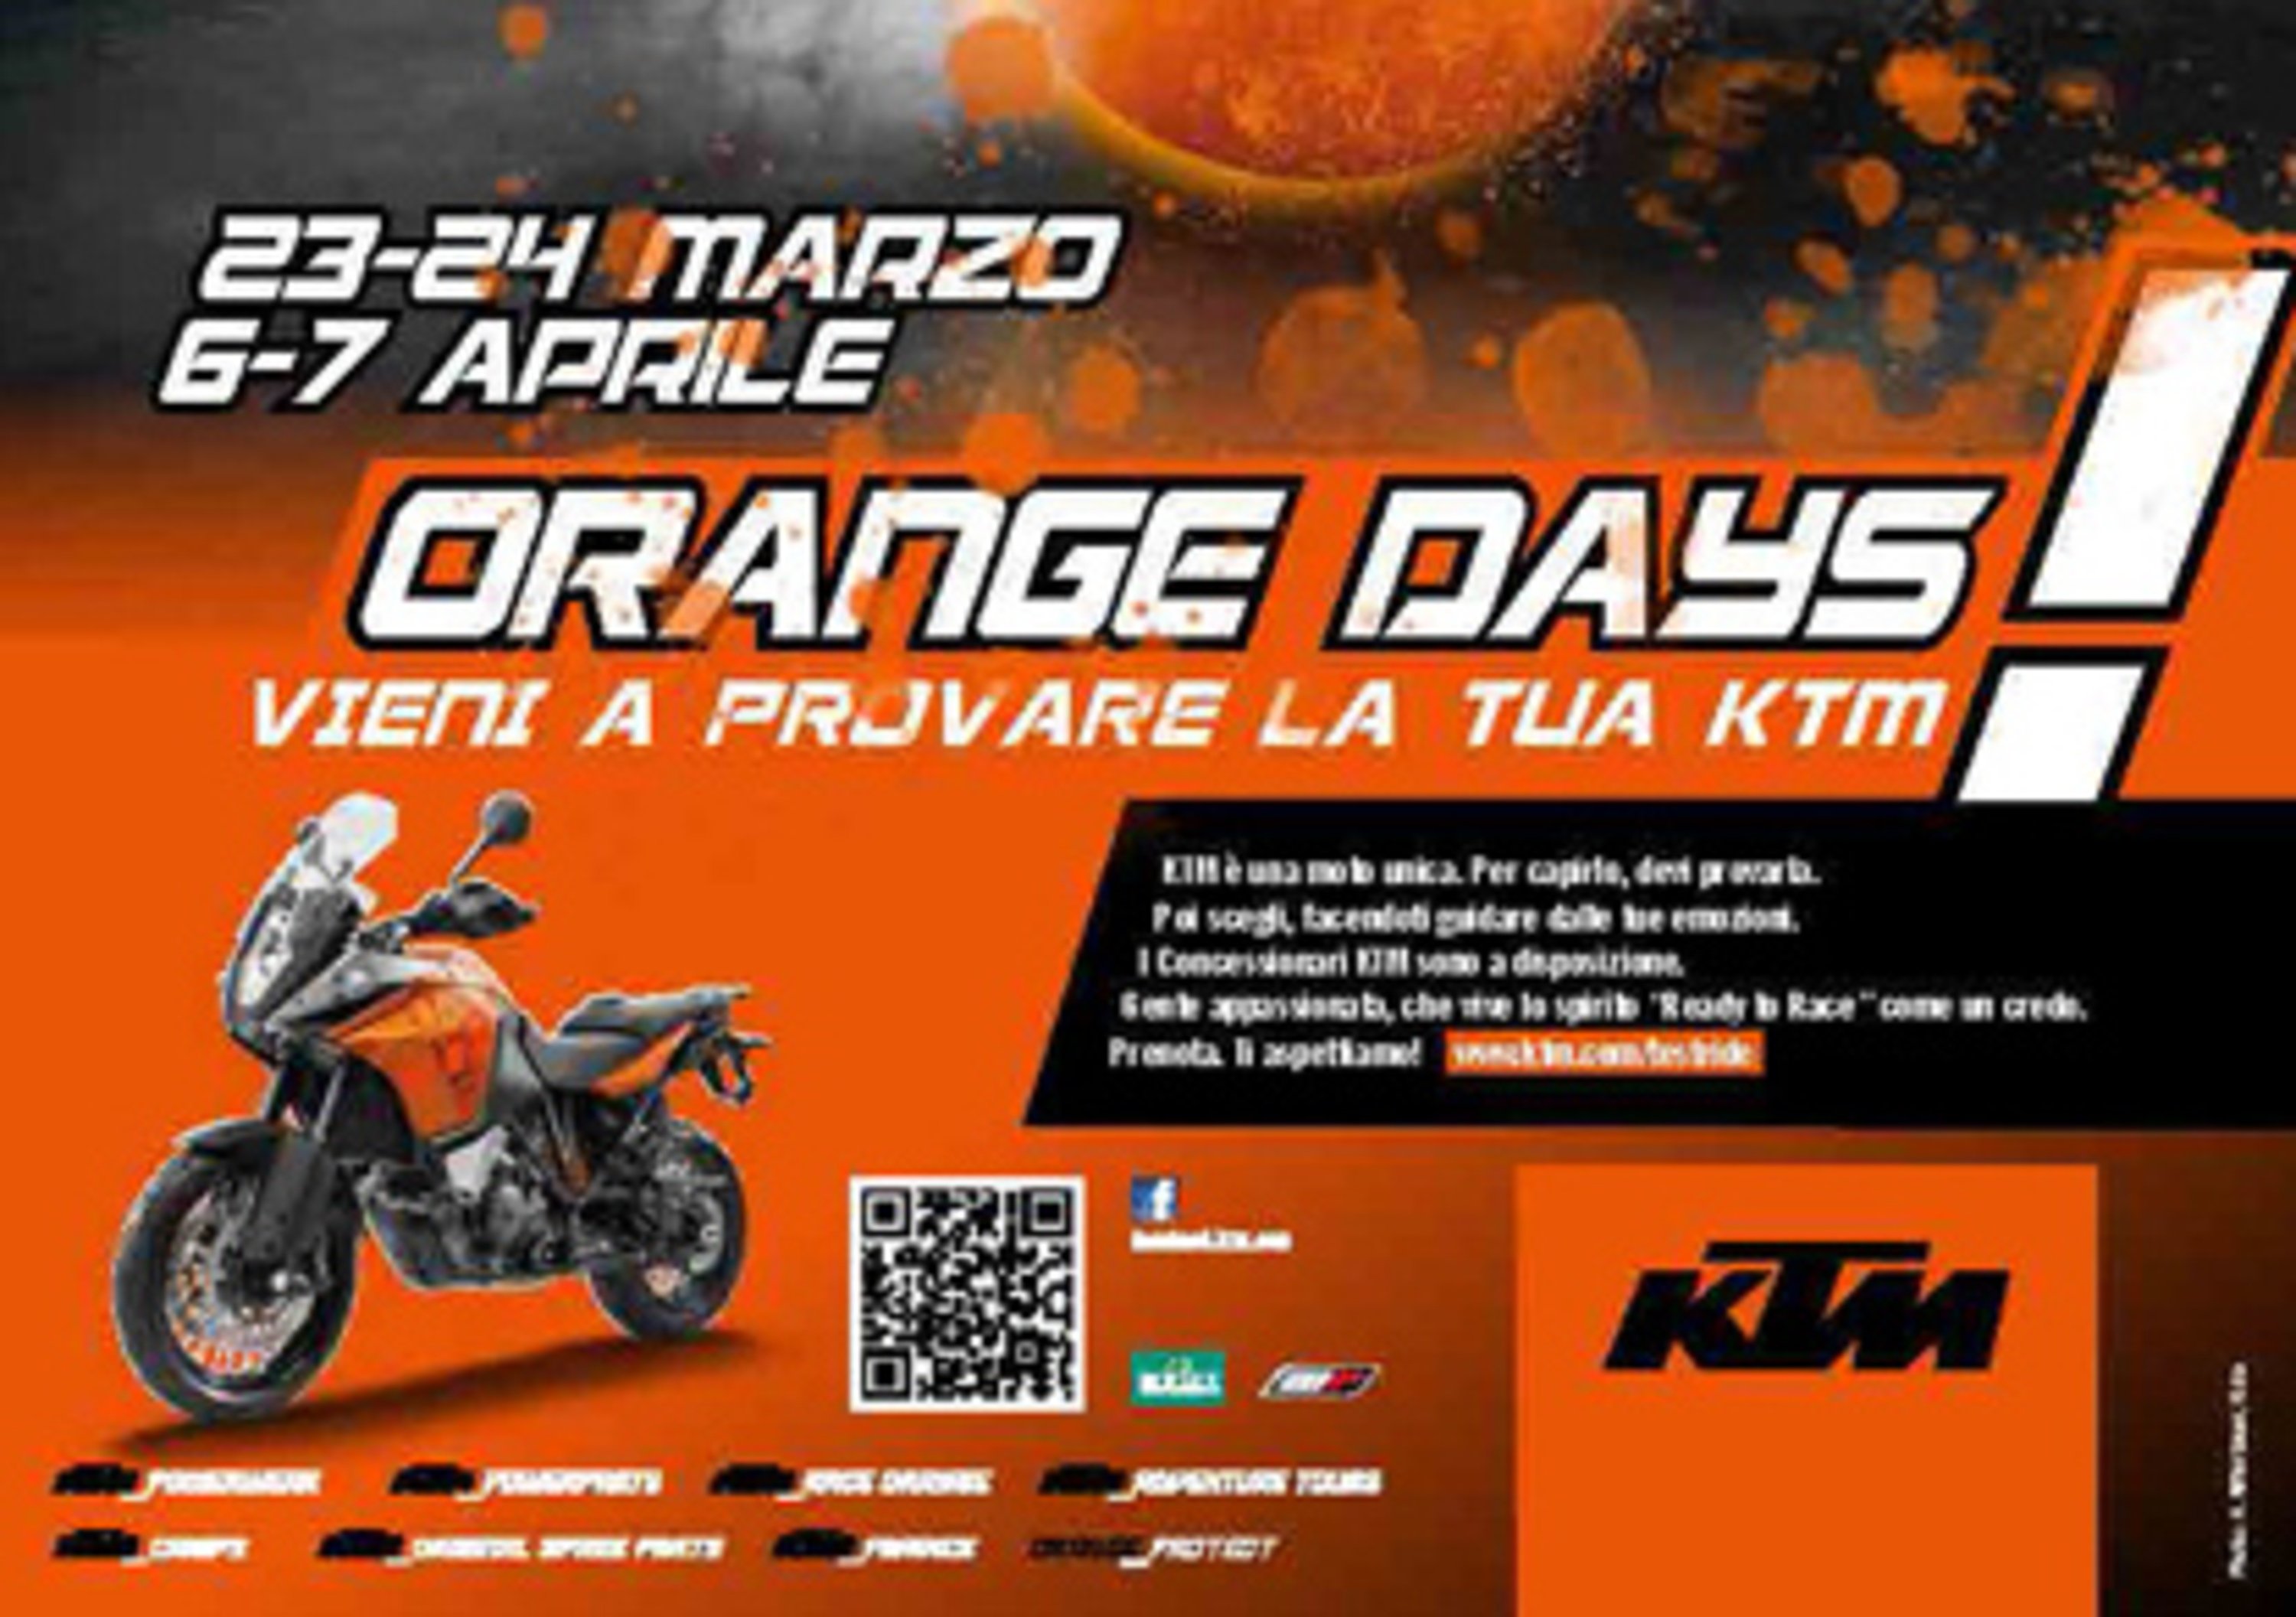 Orange Days. Porte aperte KTM il 23-24 marzo e il 6-7 aprile